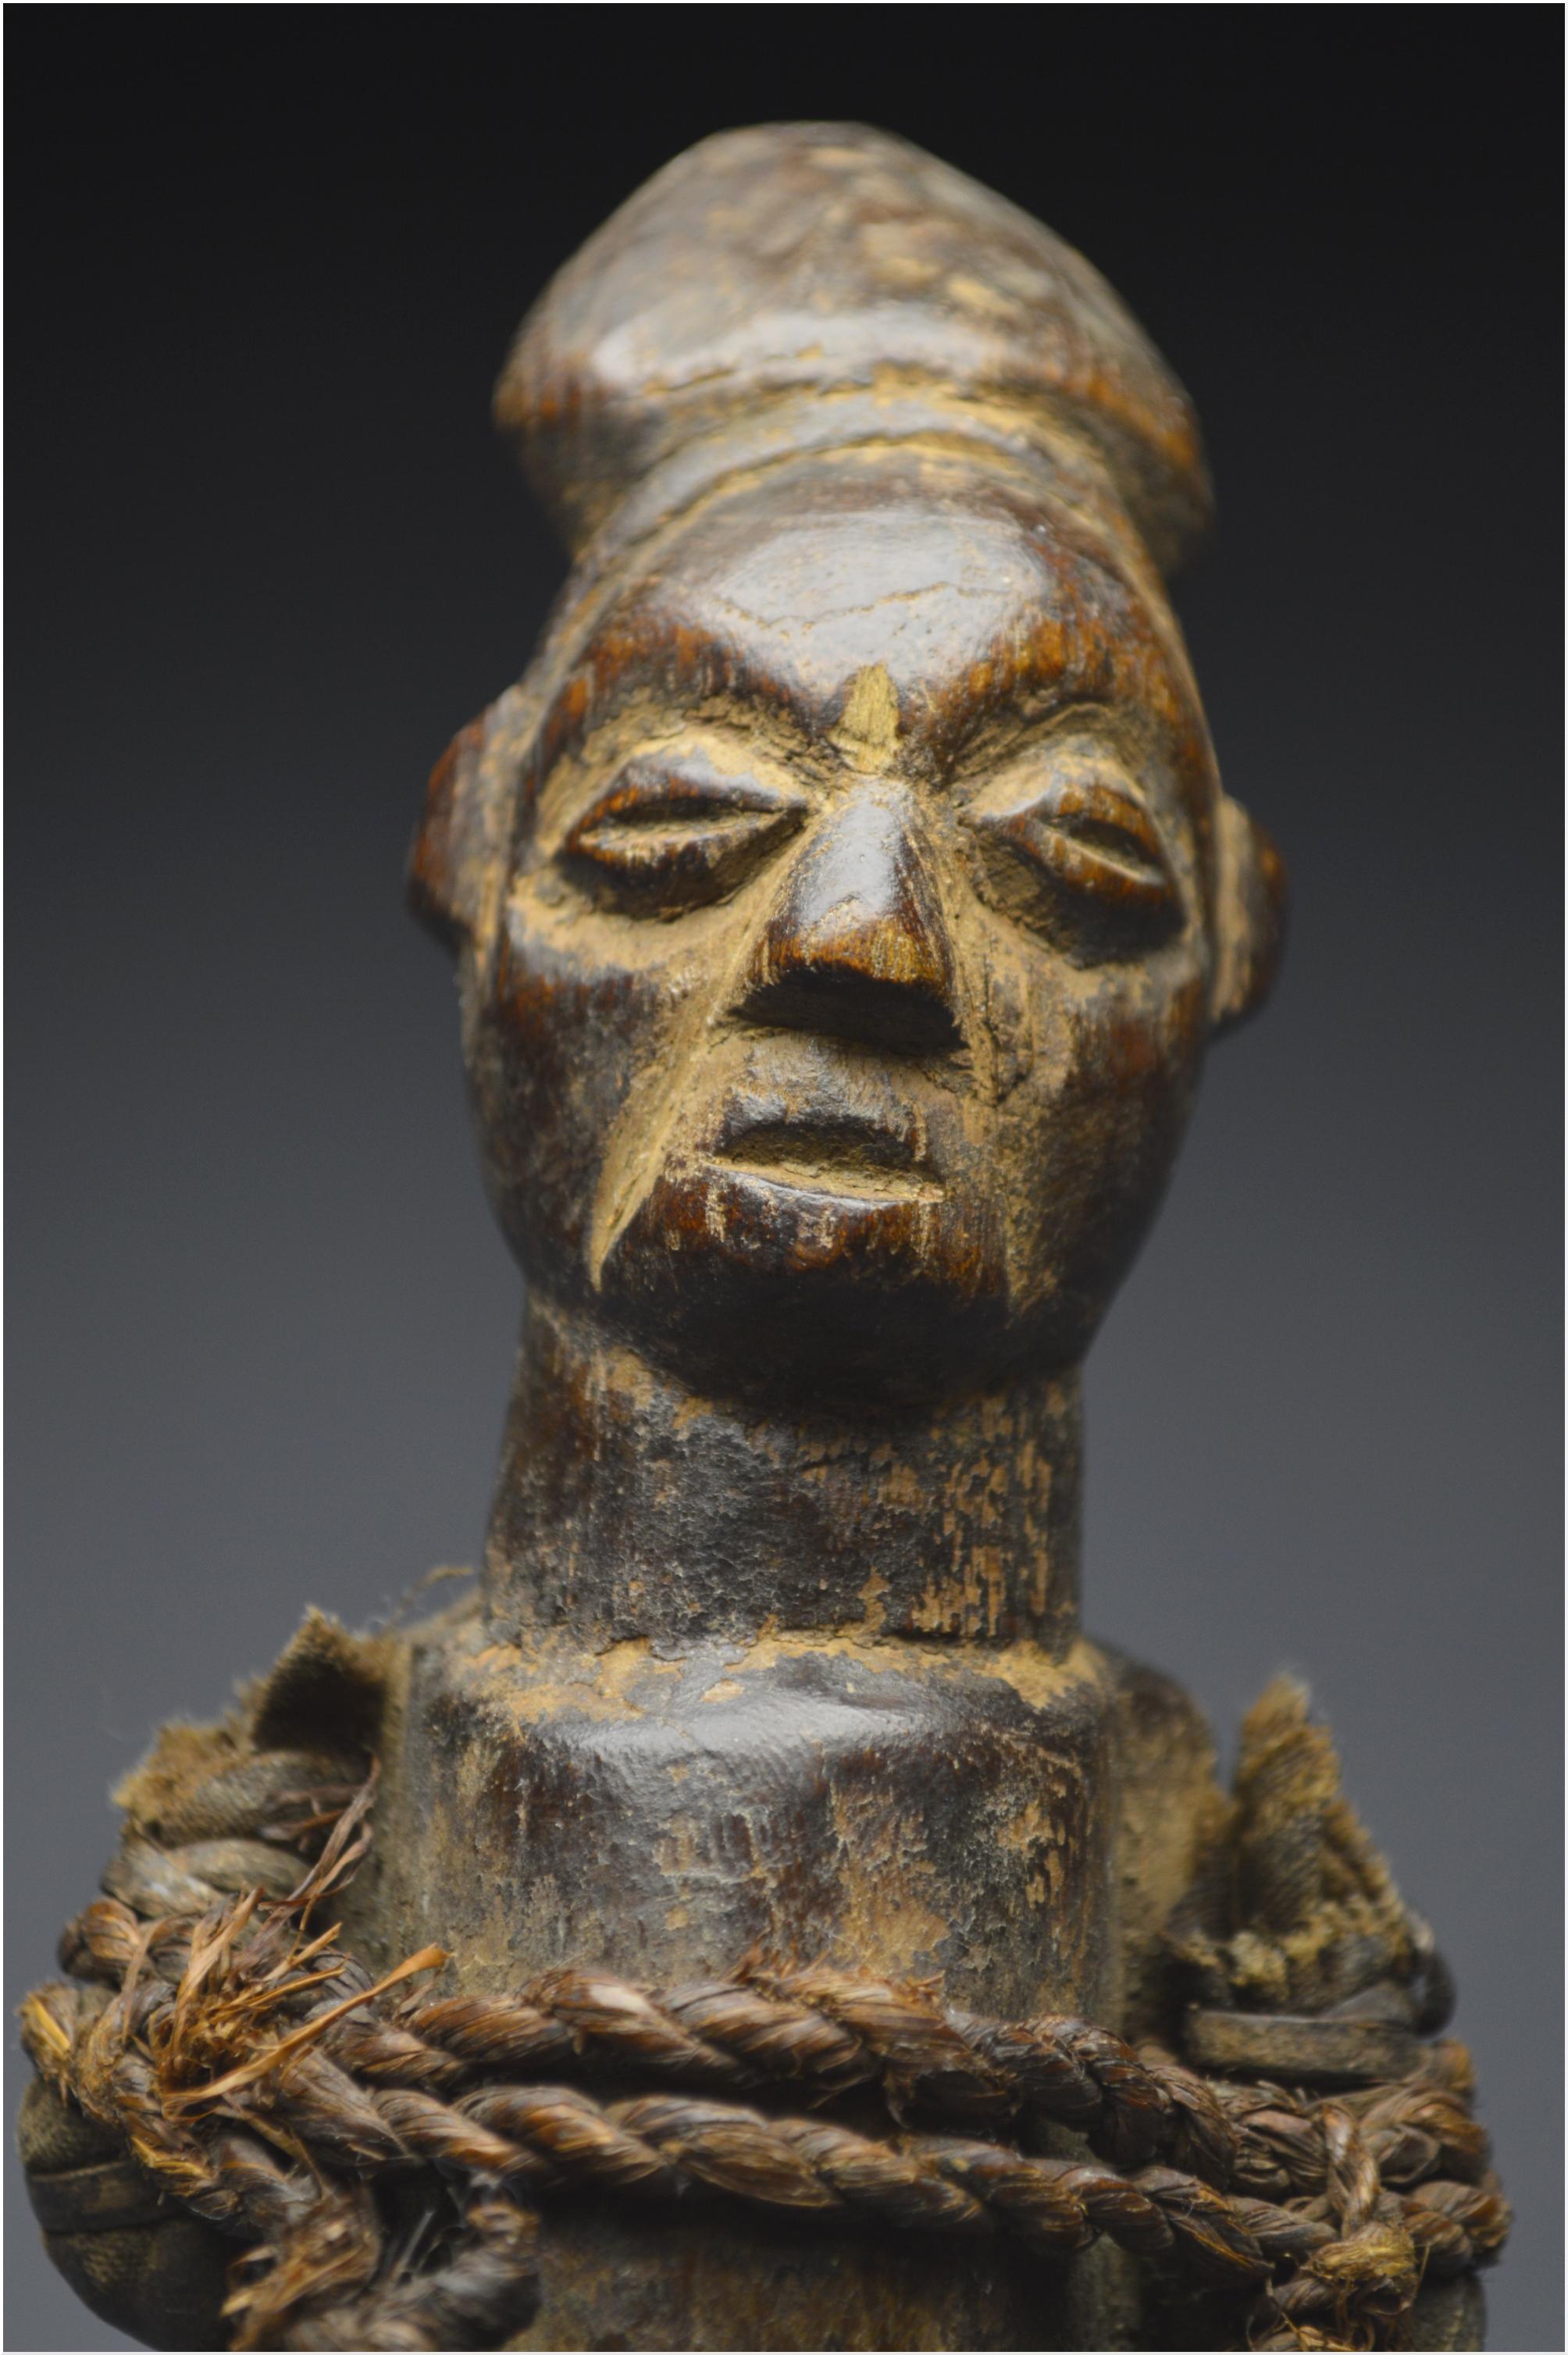 Mid-20th Century, Dem. Rep. Congo, Teke Culture, Ancient Ancestor Fetish 5